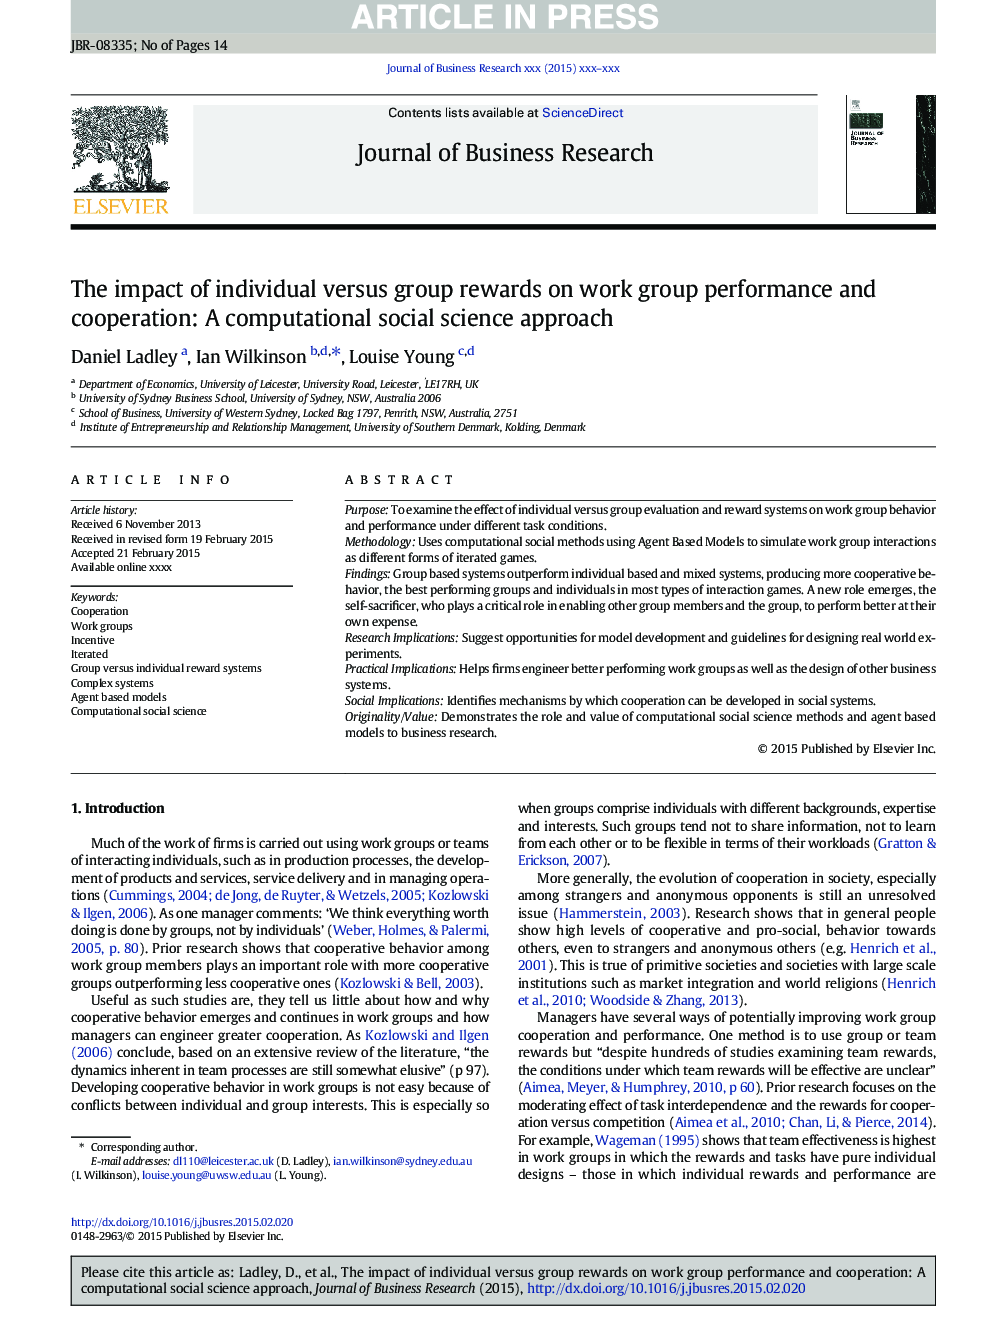 تاثیر گروه های فردی بر گروه بر عملکرد و همکاری گروه کار: روش محاسباتی علوم اجتماعی 